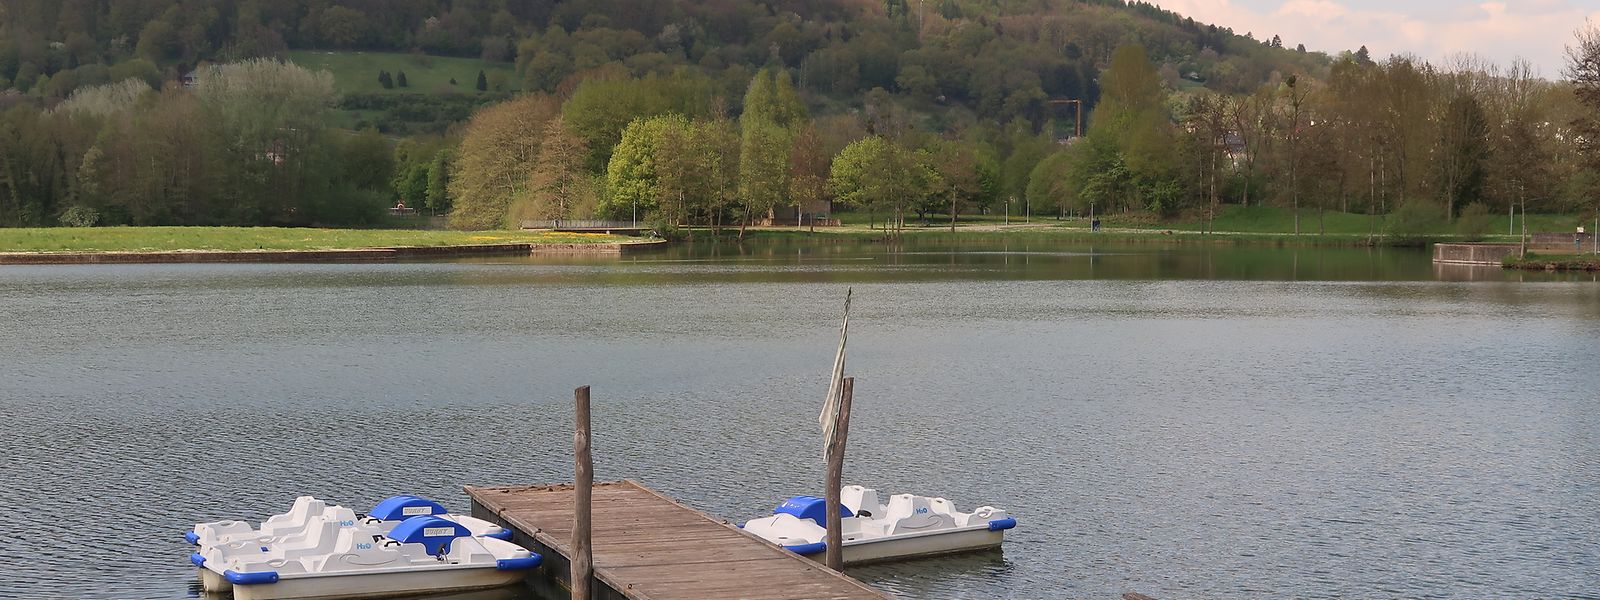 Bojen sollen den Schwimmbereich (rechts neben dem Tretbootverleih) vom Rest des Sees abtrennen.